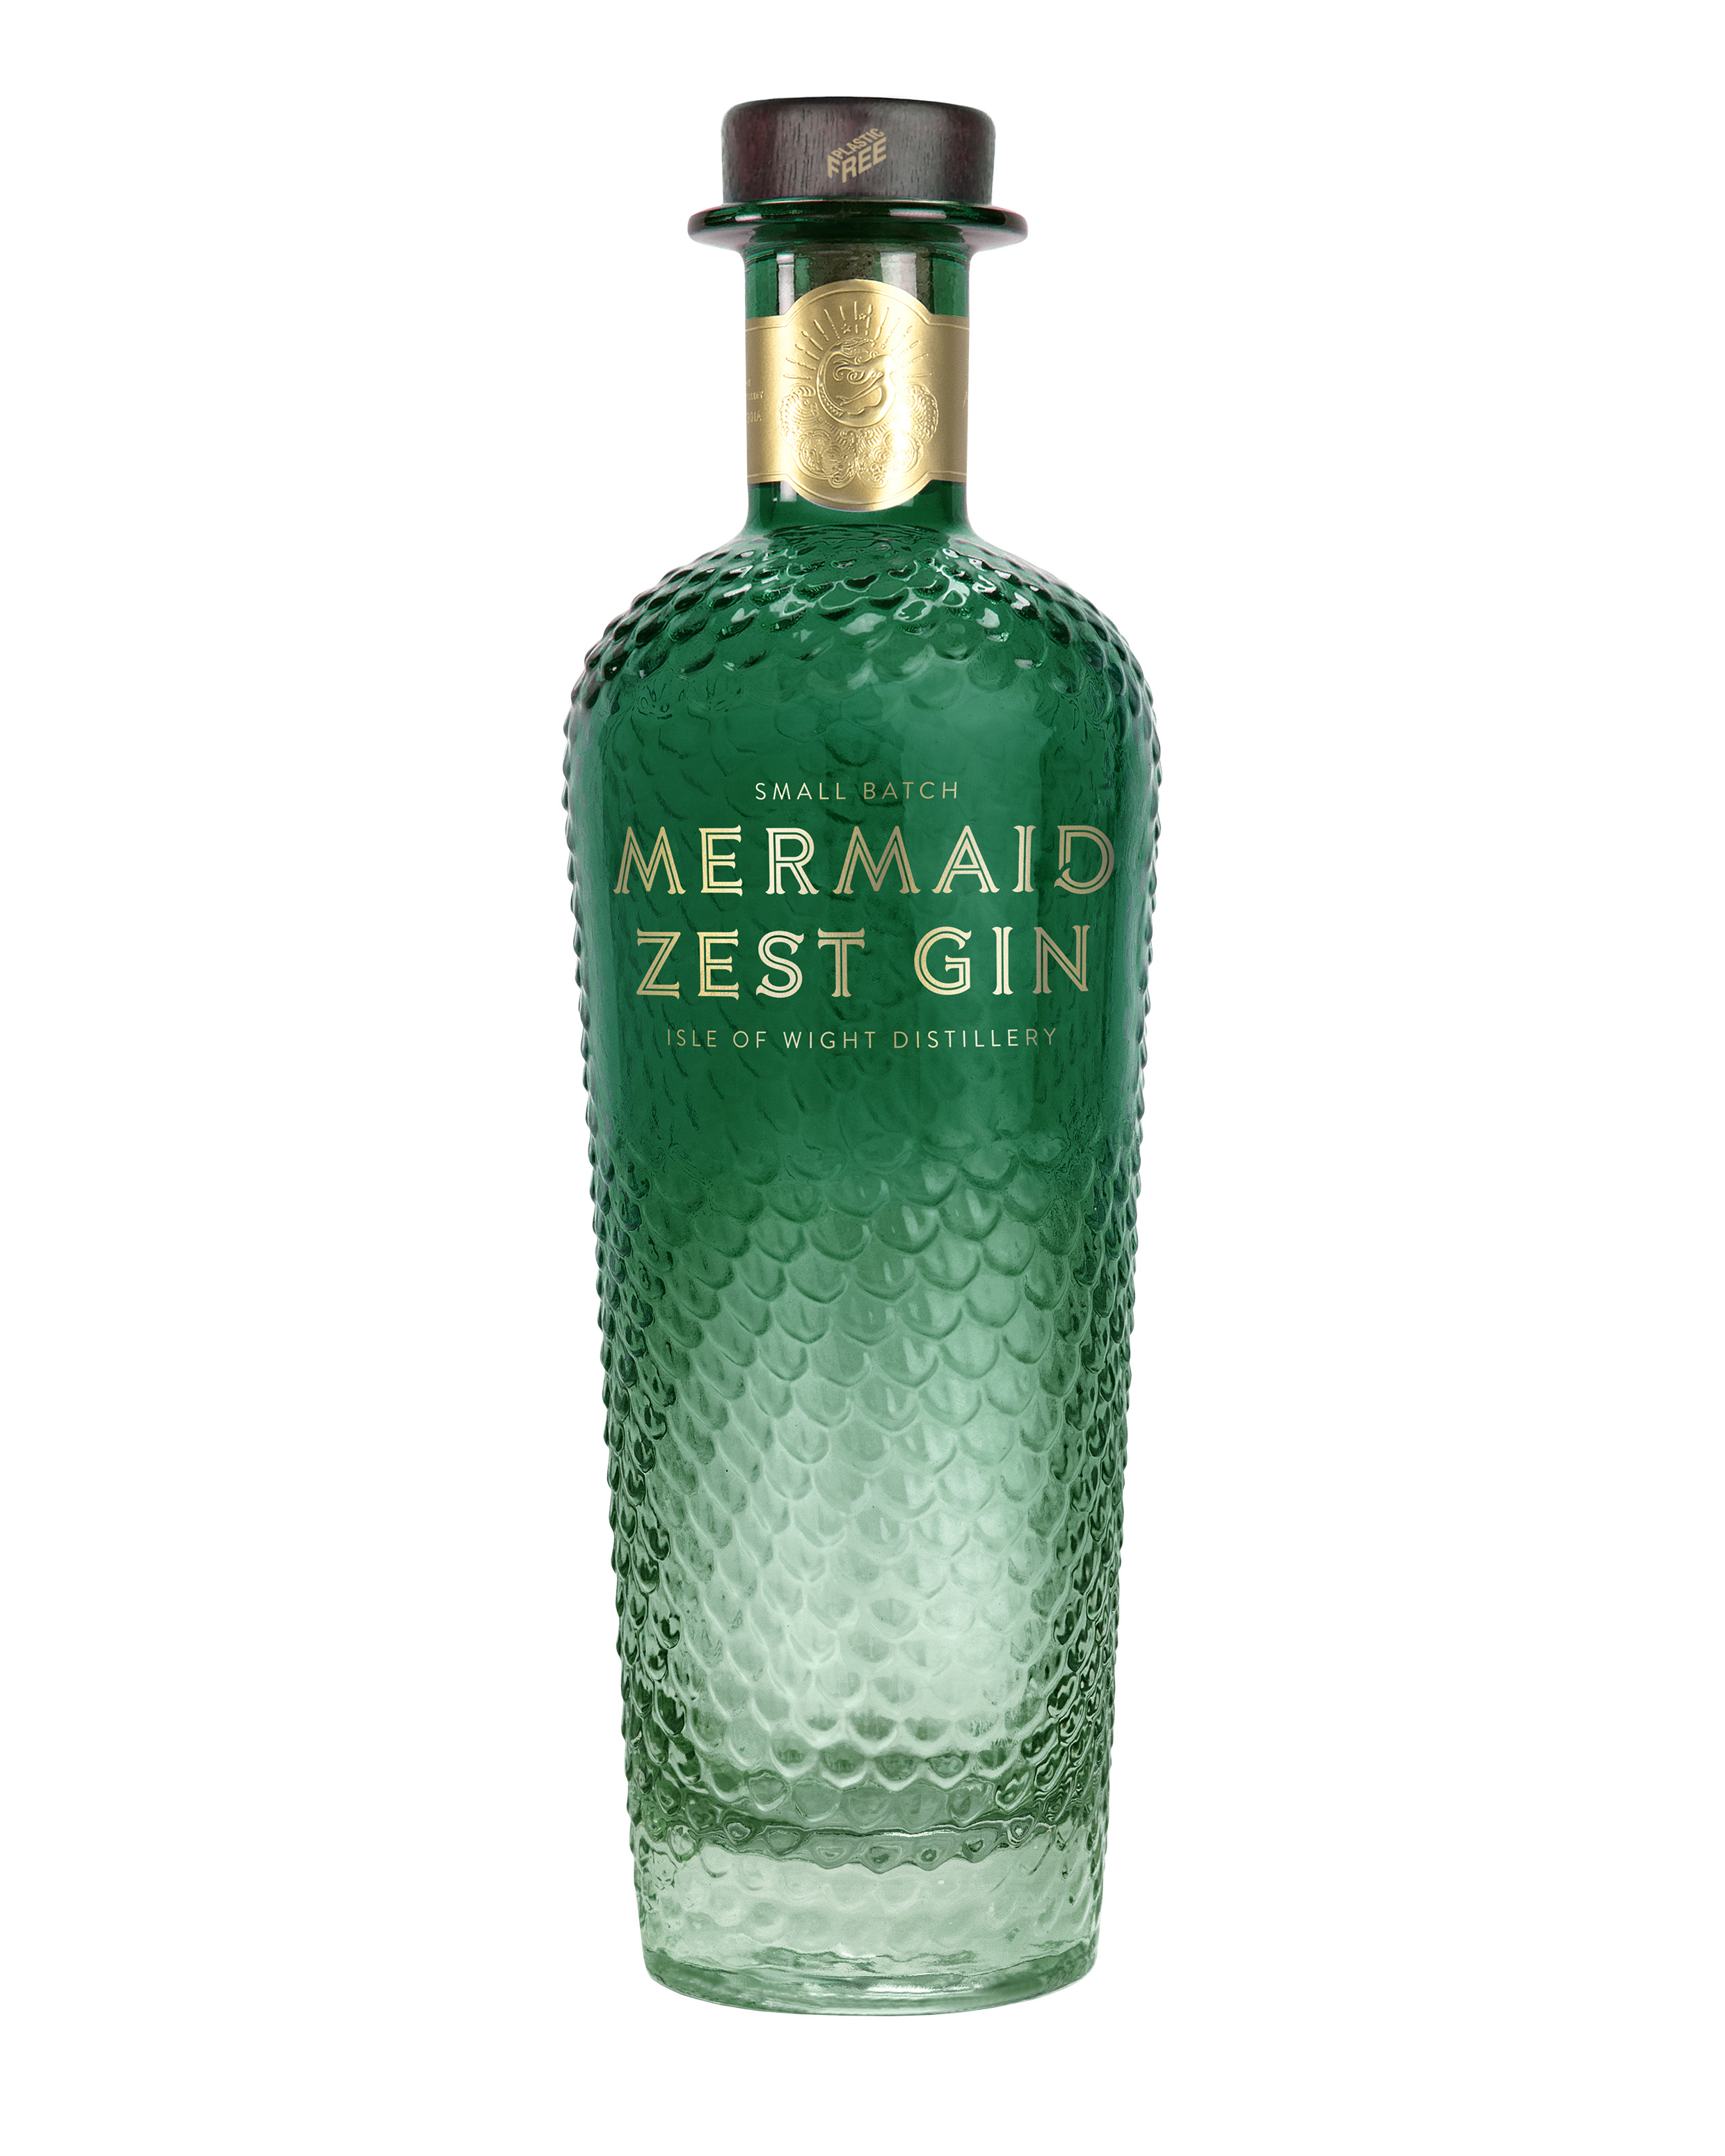 Mermaid Zest Gin bottle shot